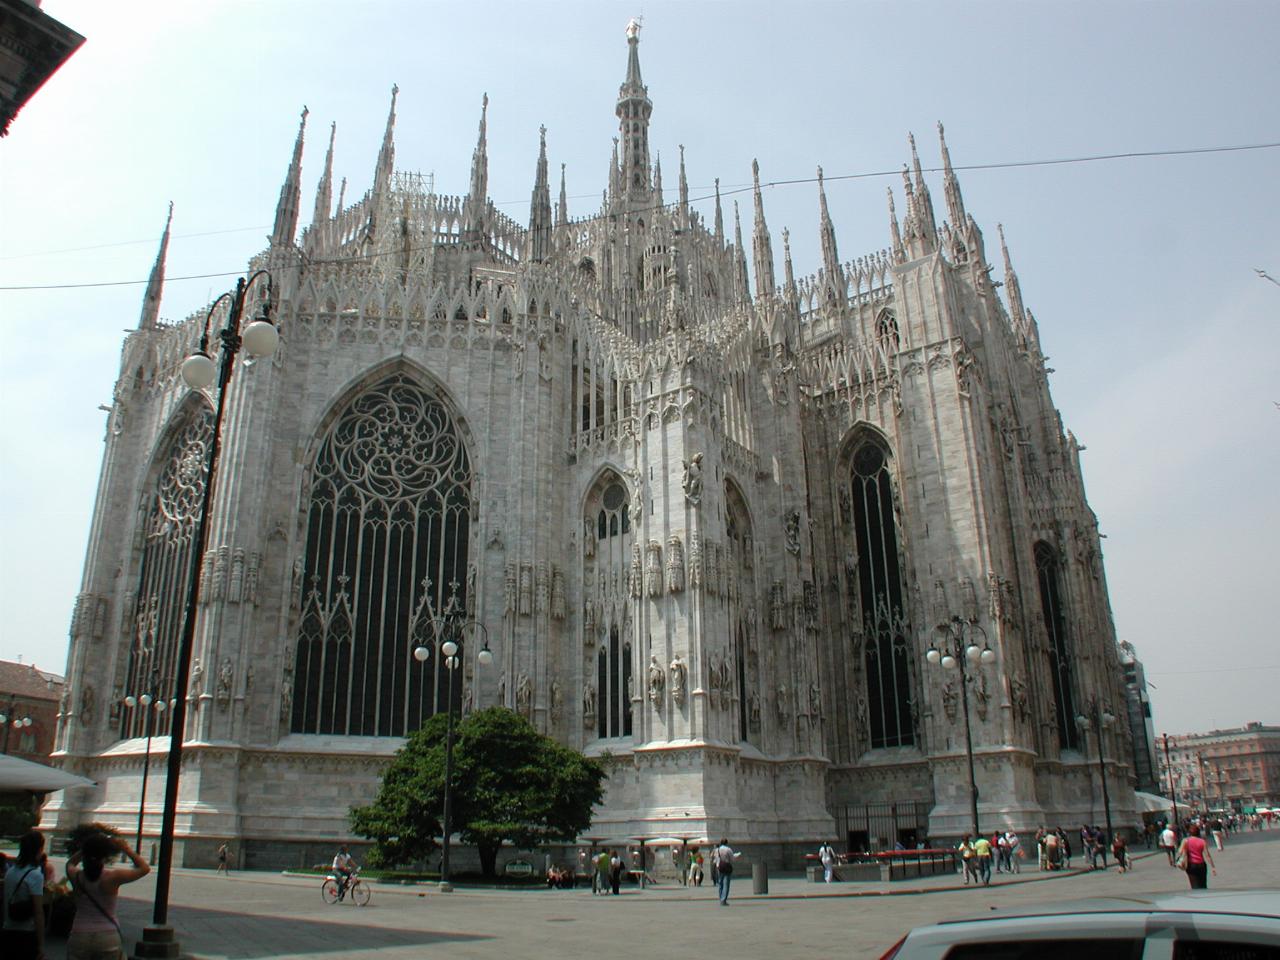 The back of Milan's Duomo